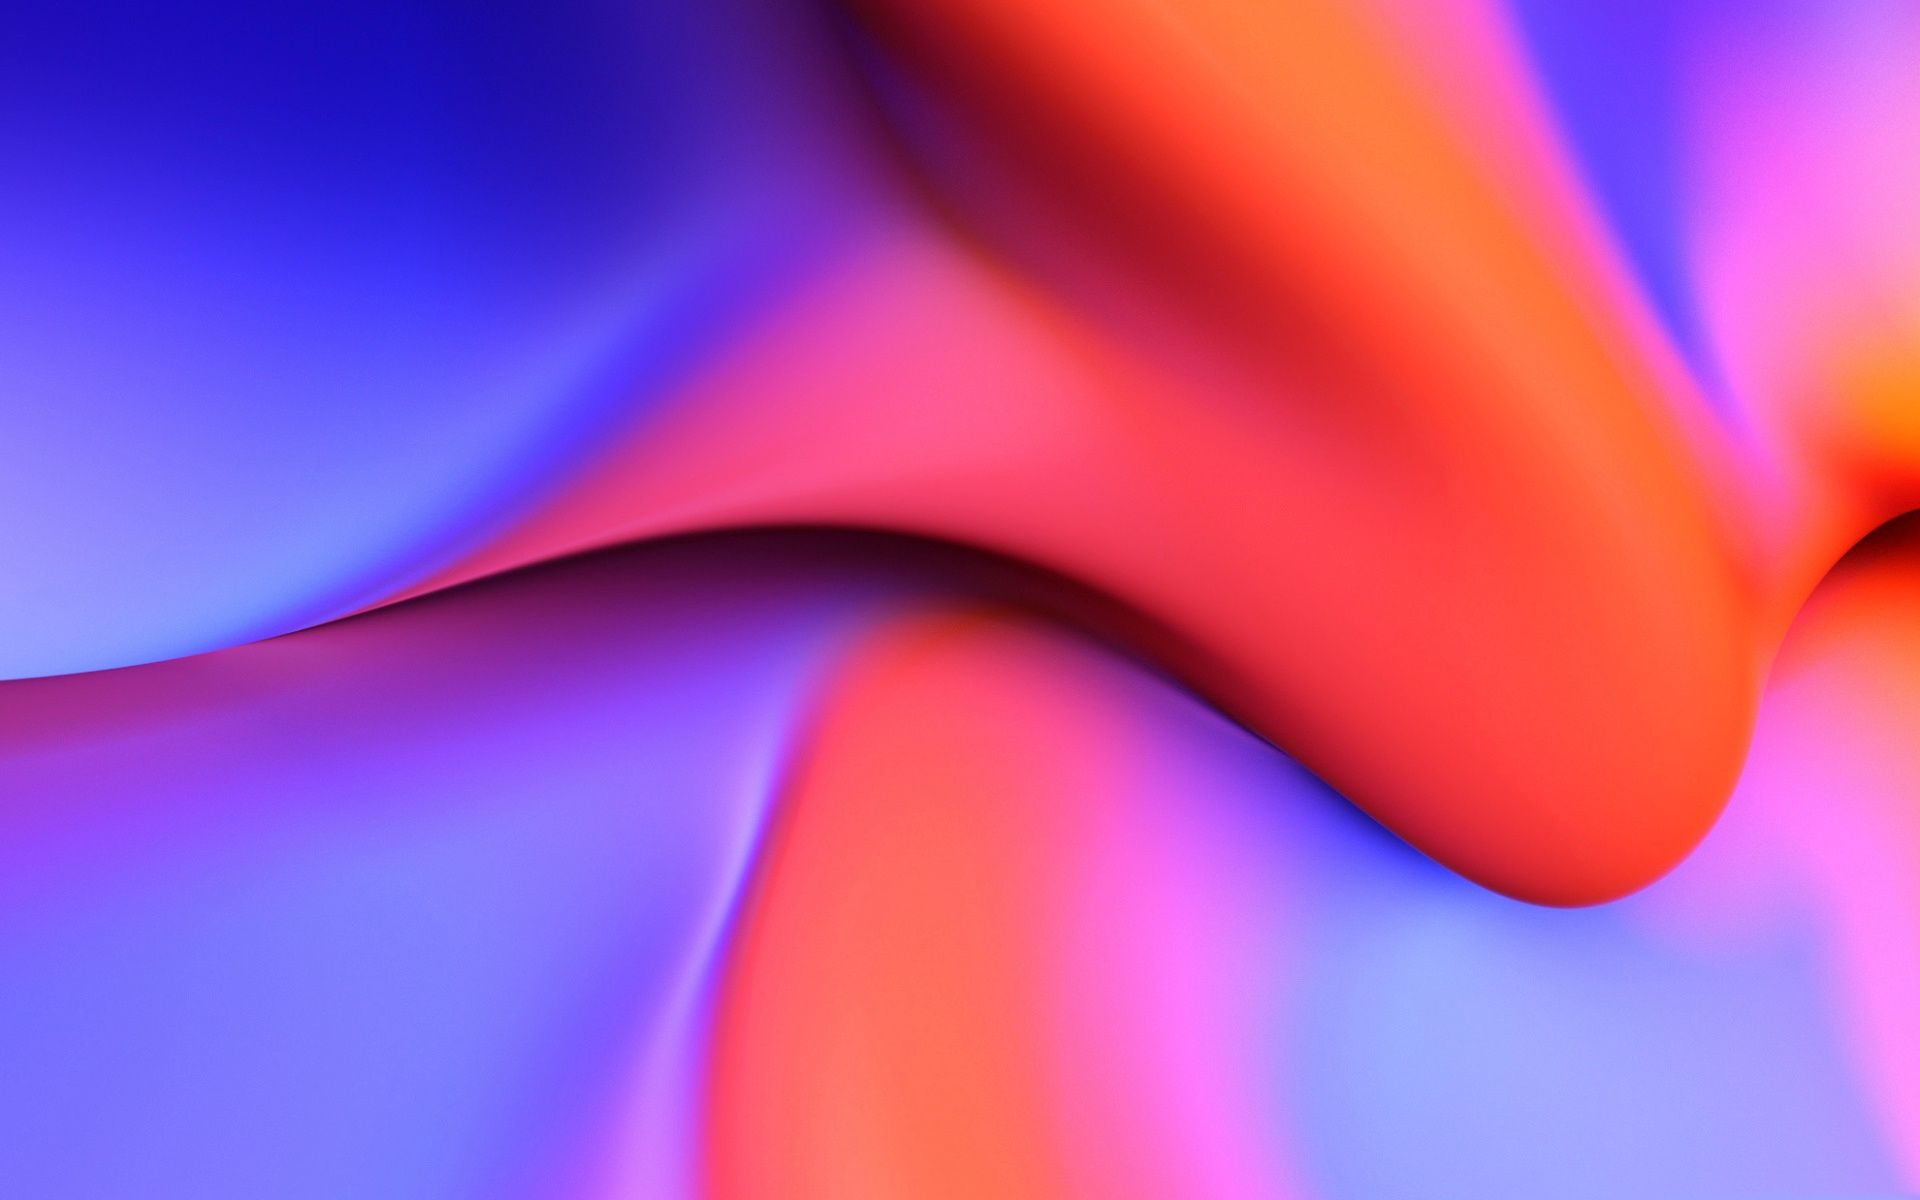  Farbiges Hintergrundbild 1920x1200. Herunterladen Hintergrundbild 3D Farbigen Wellen, Violett Orange Hintergrund, Wellen, Hintergrund, 3D Kreativen Hintergrund Mit Einer Auflösung Zu überwachen 1920x1200. Bilder Auf Dem Desktop